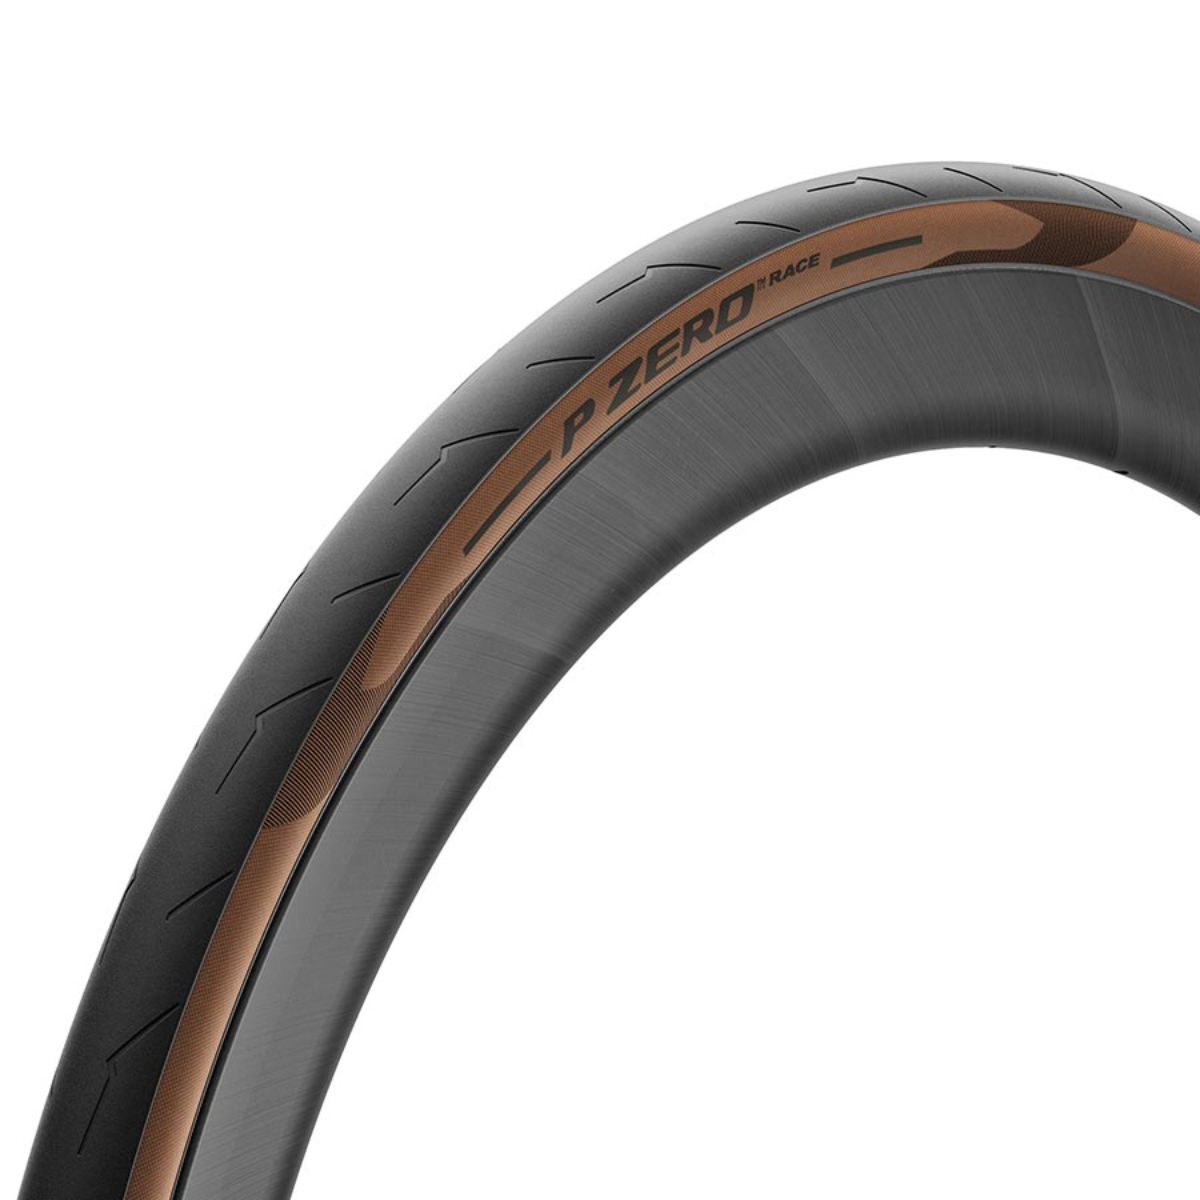 3 leviers démonte-pneu de bicyclette en plastique Noir S’utilise comme un pied de biche TYKusm 